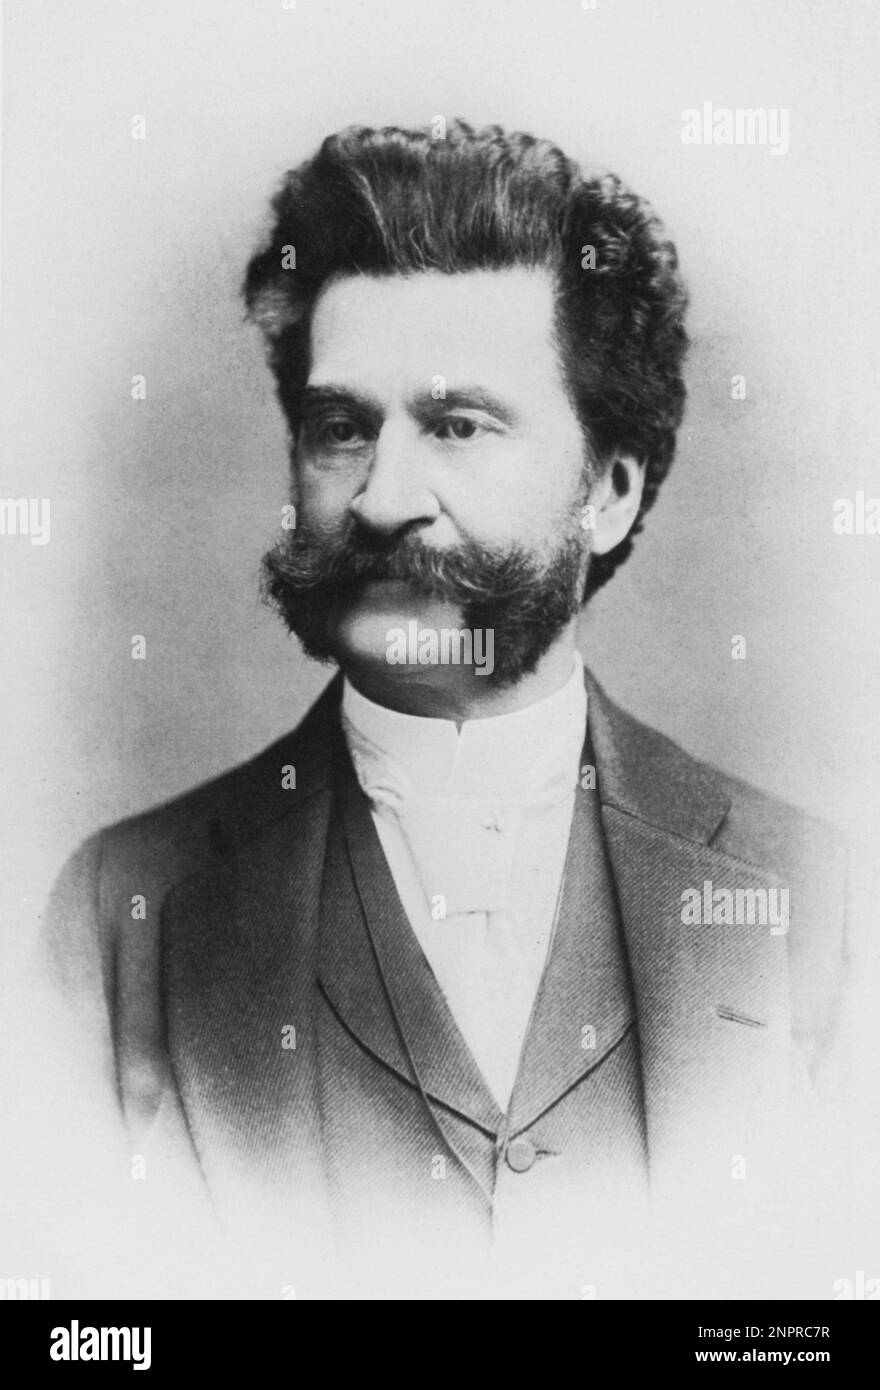 der österreichische Komponist JOHANN STRAUSS Jr ( 1825 - 1899 ) , der WALZER KÖNIG , berühmt für die Operetta DIE FLEDERMAUS - MUSICA CLASSICA - COMPOSITORE - Portrait - ritratto - colletto - Kragen - Krawatte - Cravatta - Baffi - Schnurrbart - WALTZER - walzer -- - Archivio GBB Stockfoto